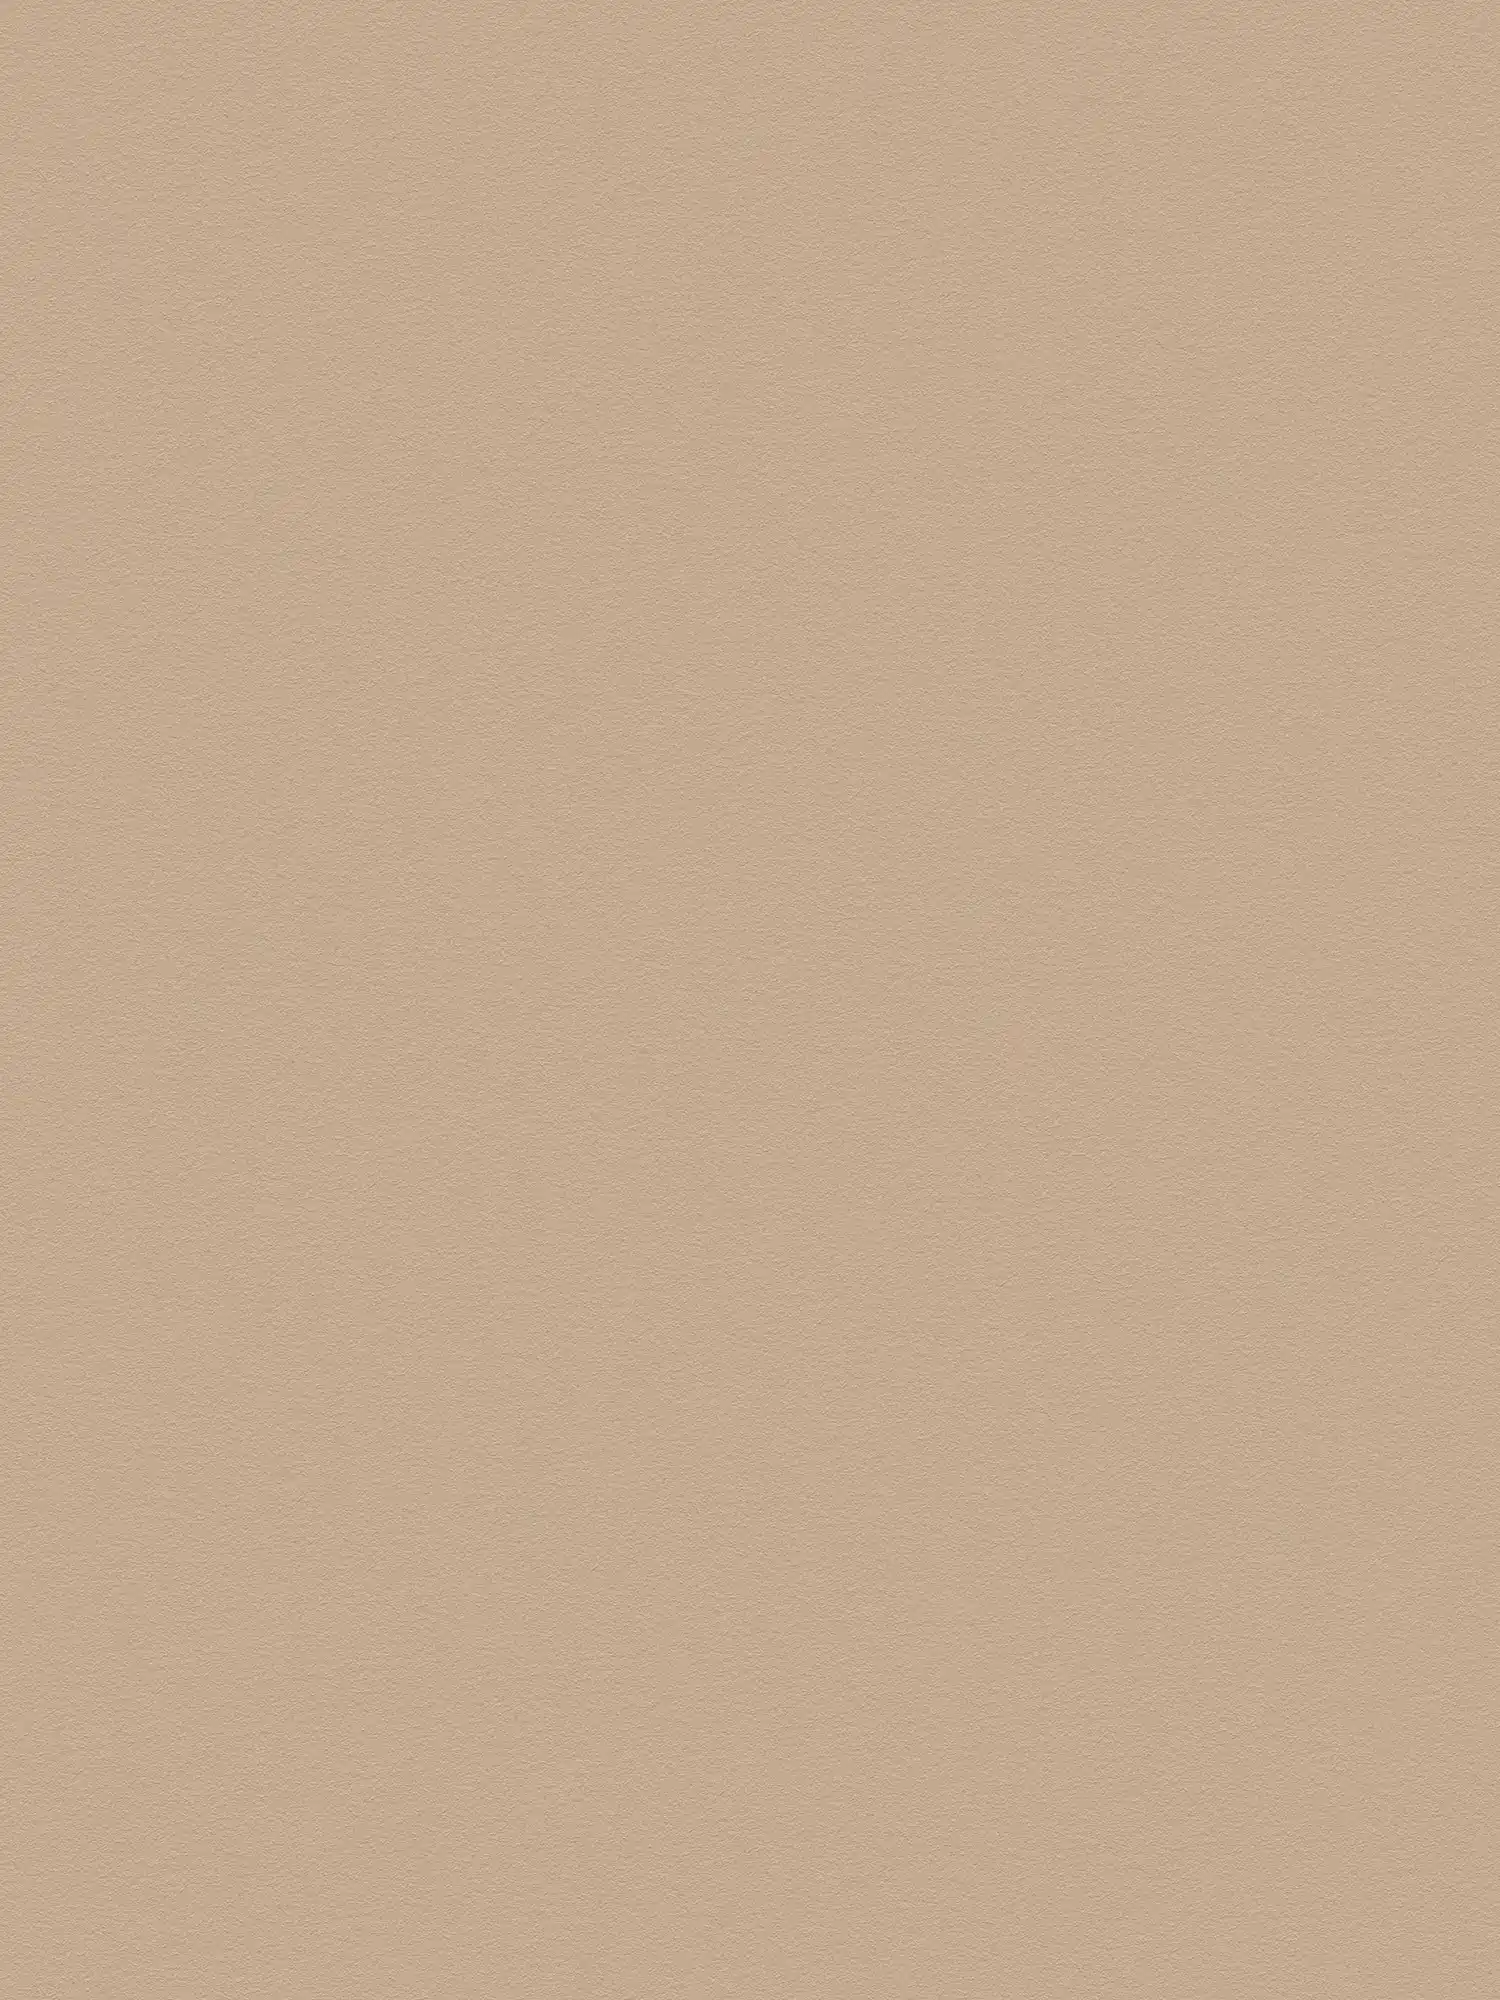 Papier peint uni marron clair avec surface lisse - beige, marron
